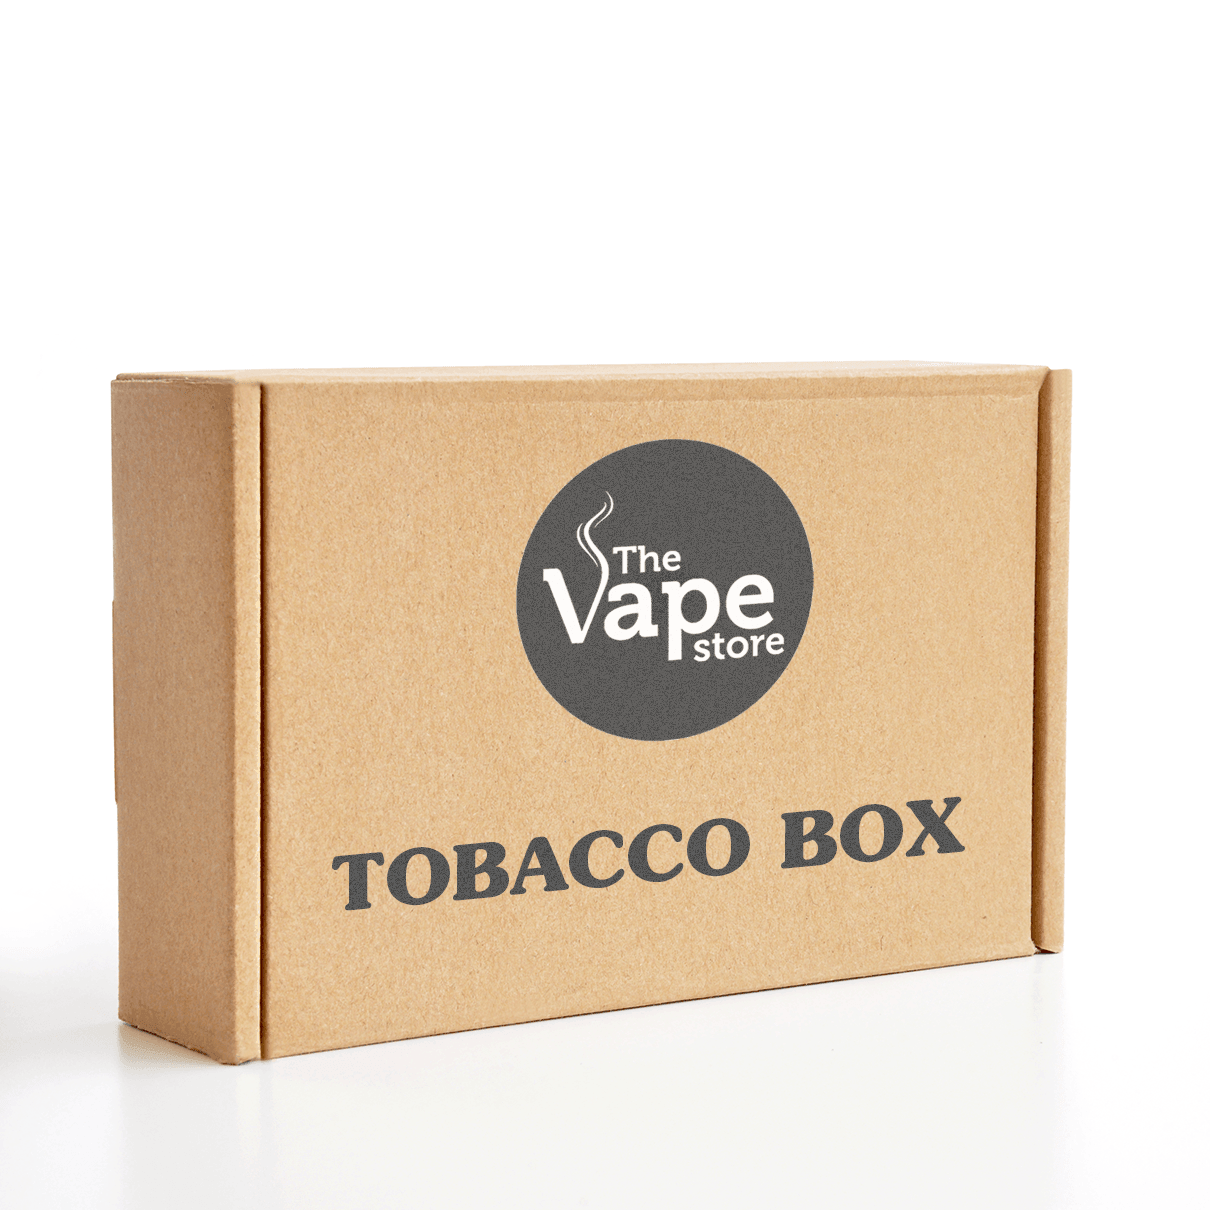 The Vape Store Tobacco Sample Box - The Vape Store